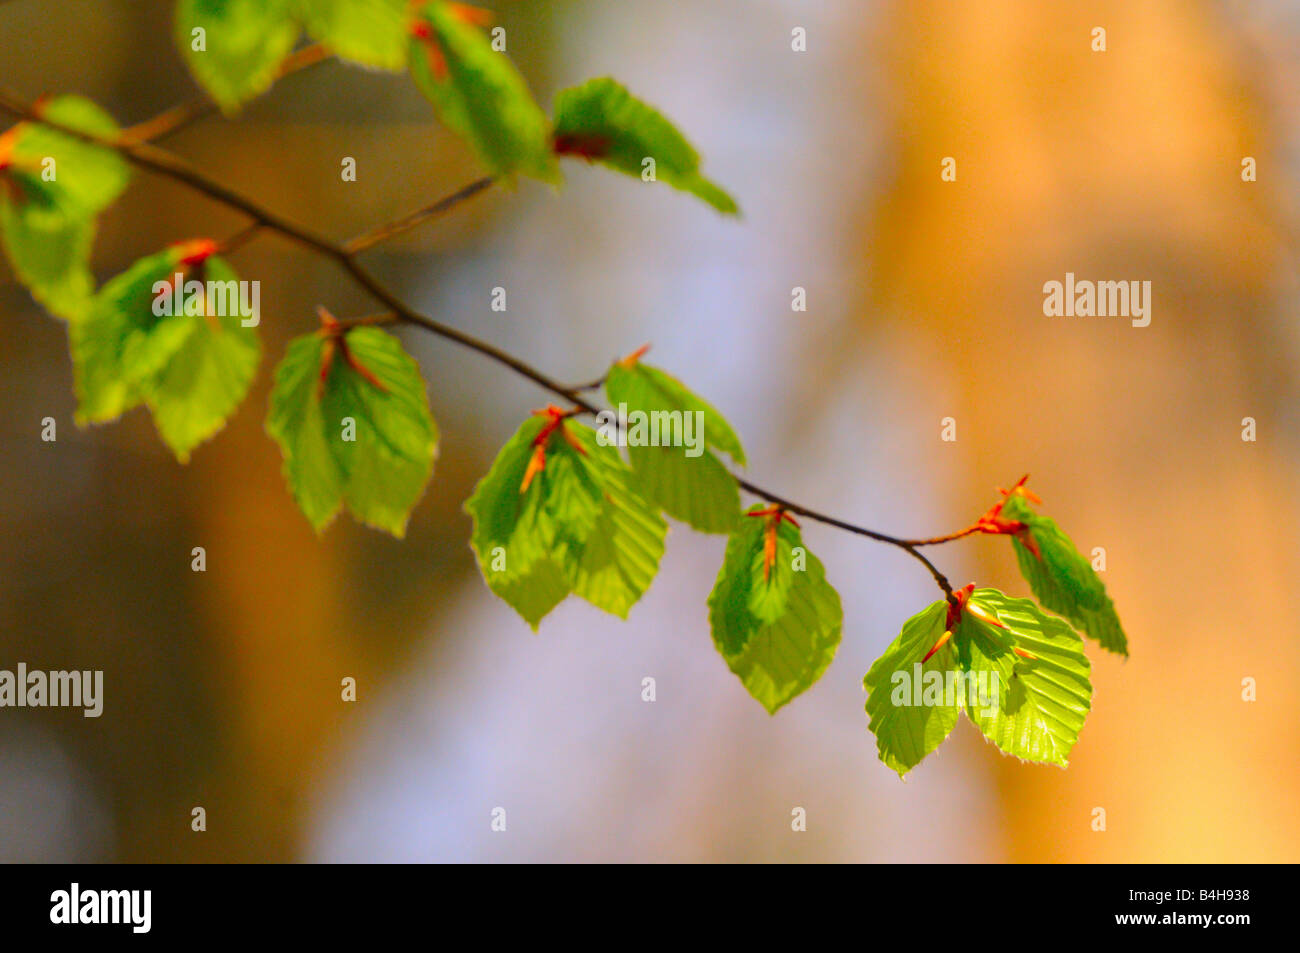 Detalle de las hojas del árbol de hoja caduca, Alemania Foto de stock